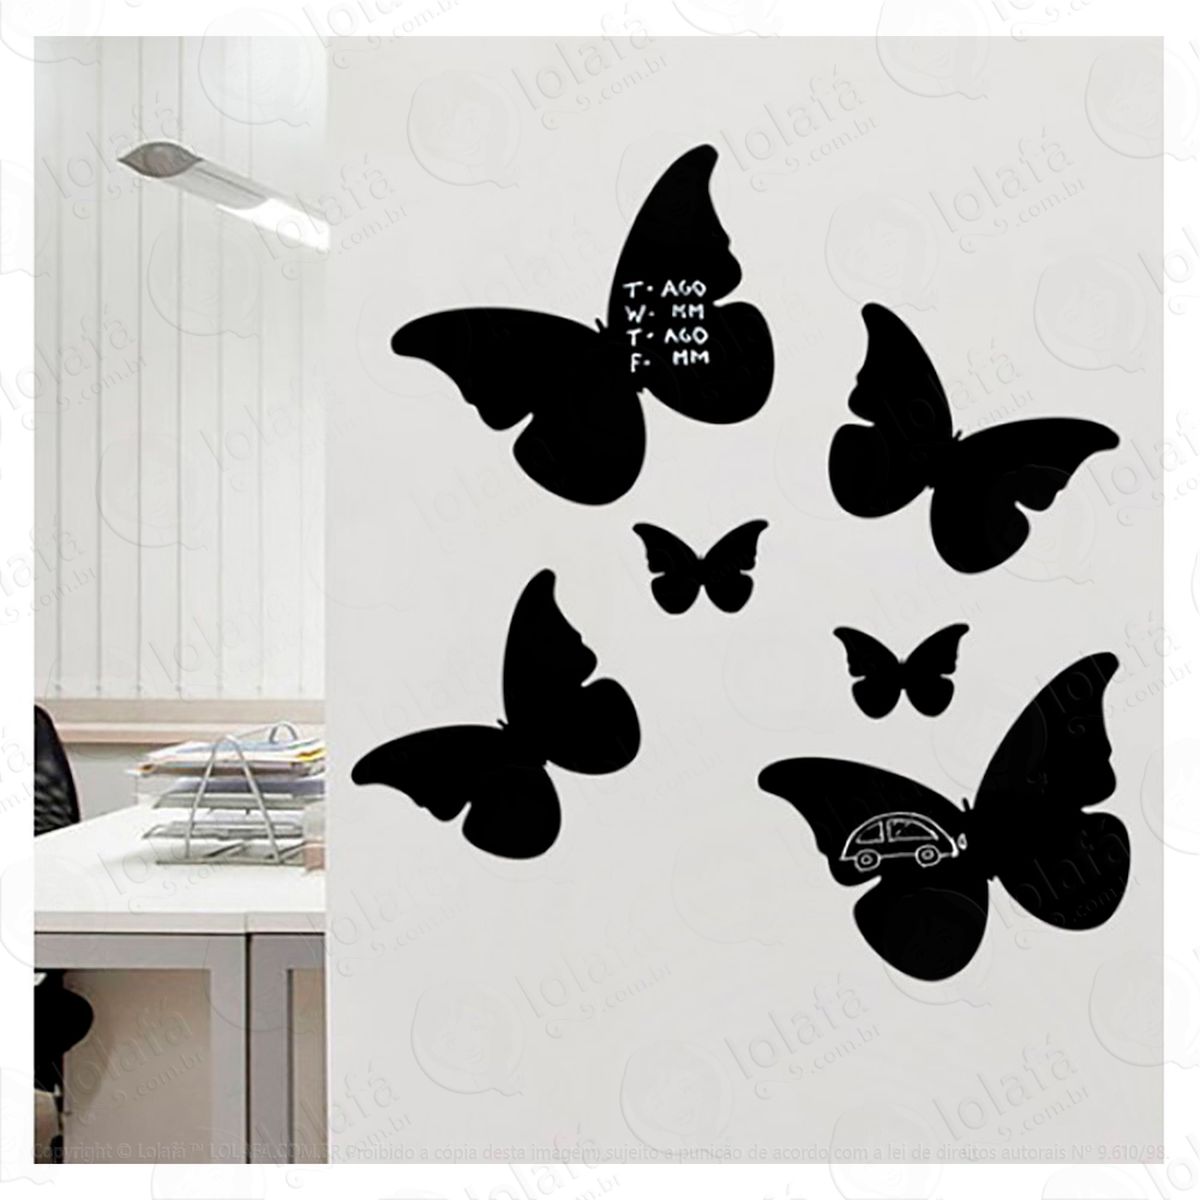 borboletas adesivo lousa quadro negro de parede para escrever com giz - mod:260